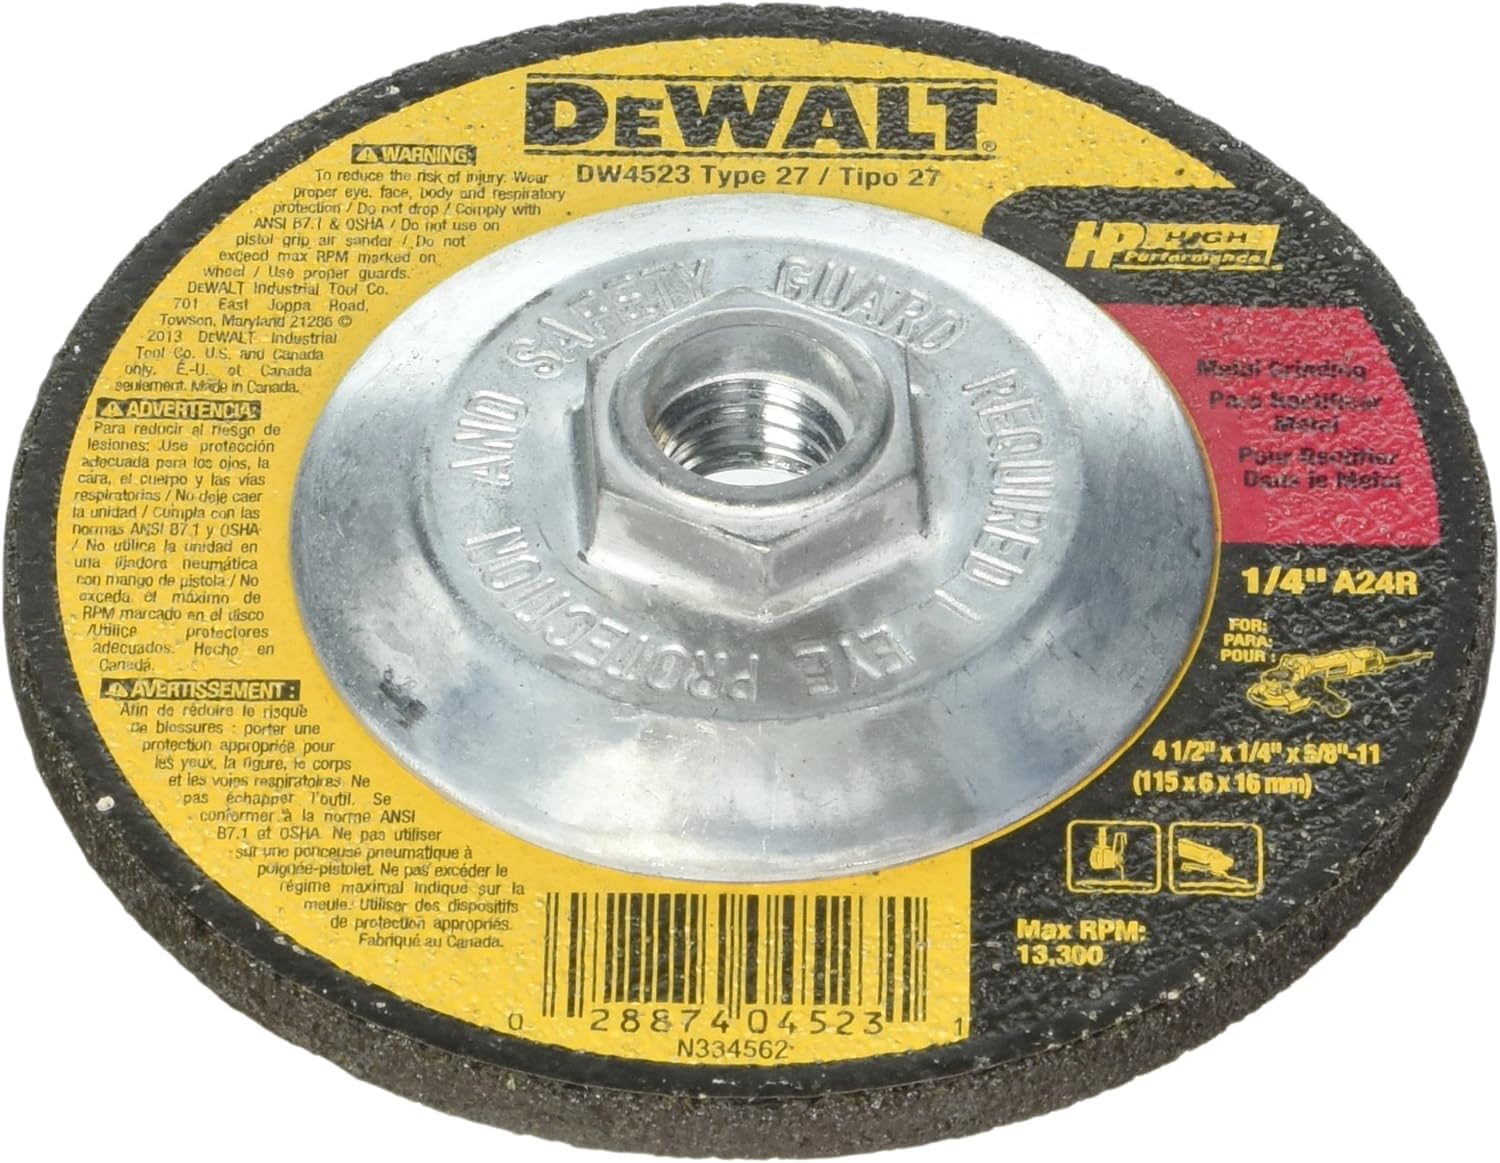 Dewalt DW4523 20 Pack 4-1/2-Inch by 1/4-Inch by 5/8-Inch General Purpose Metal Grinding Wheel